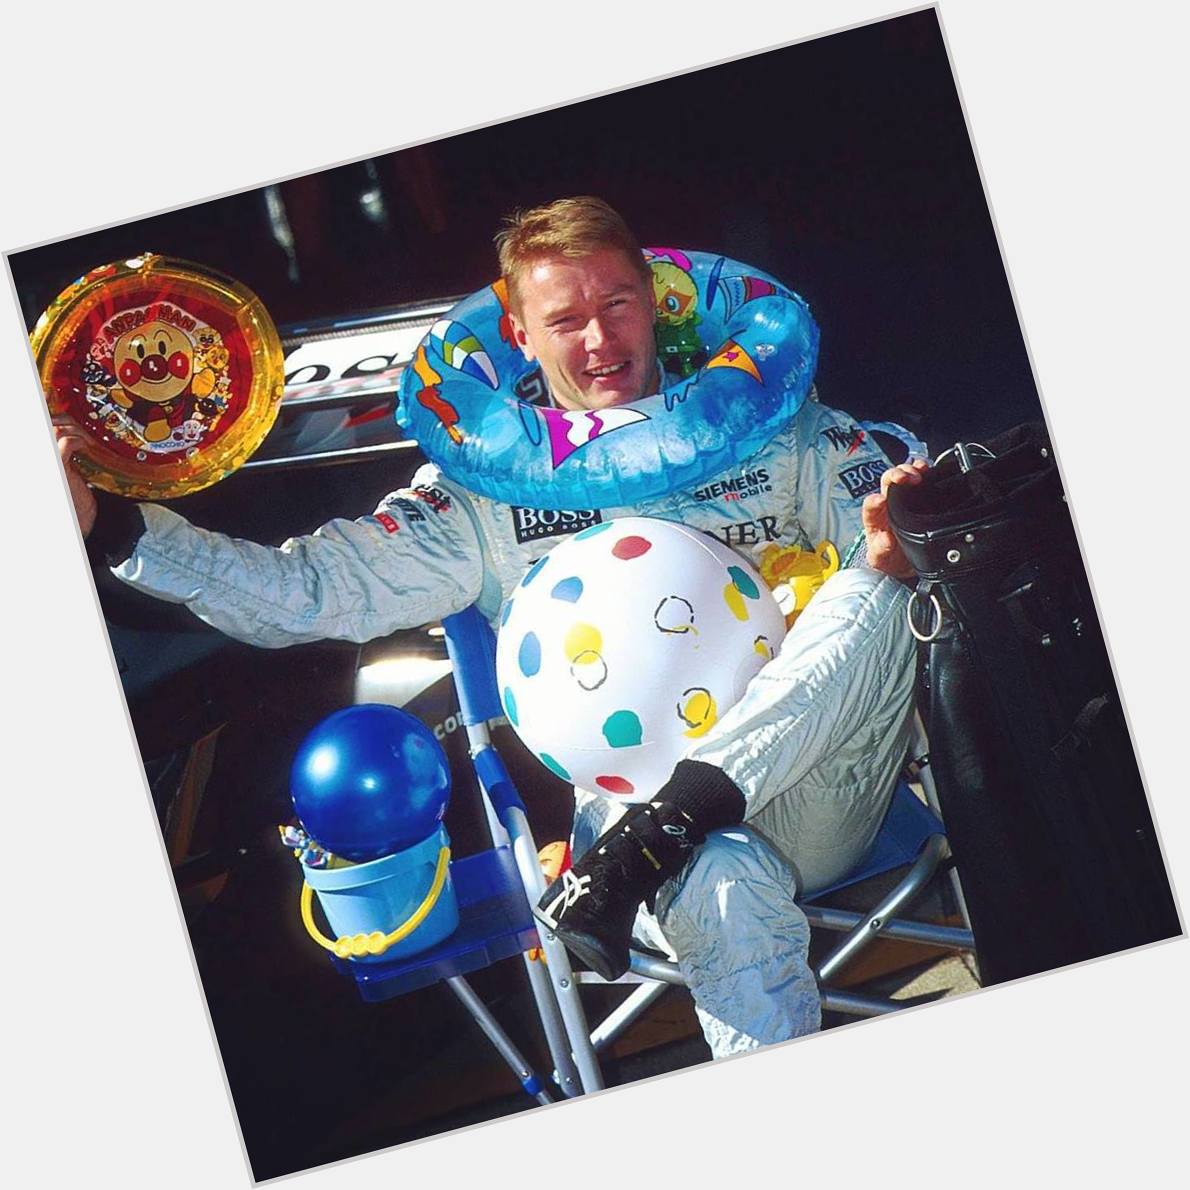 Happy Birthday to the Flying Finn, Mika Hakkinen! 